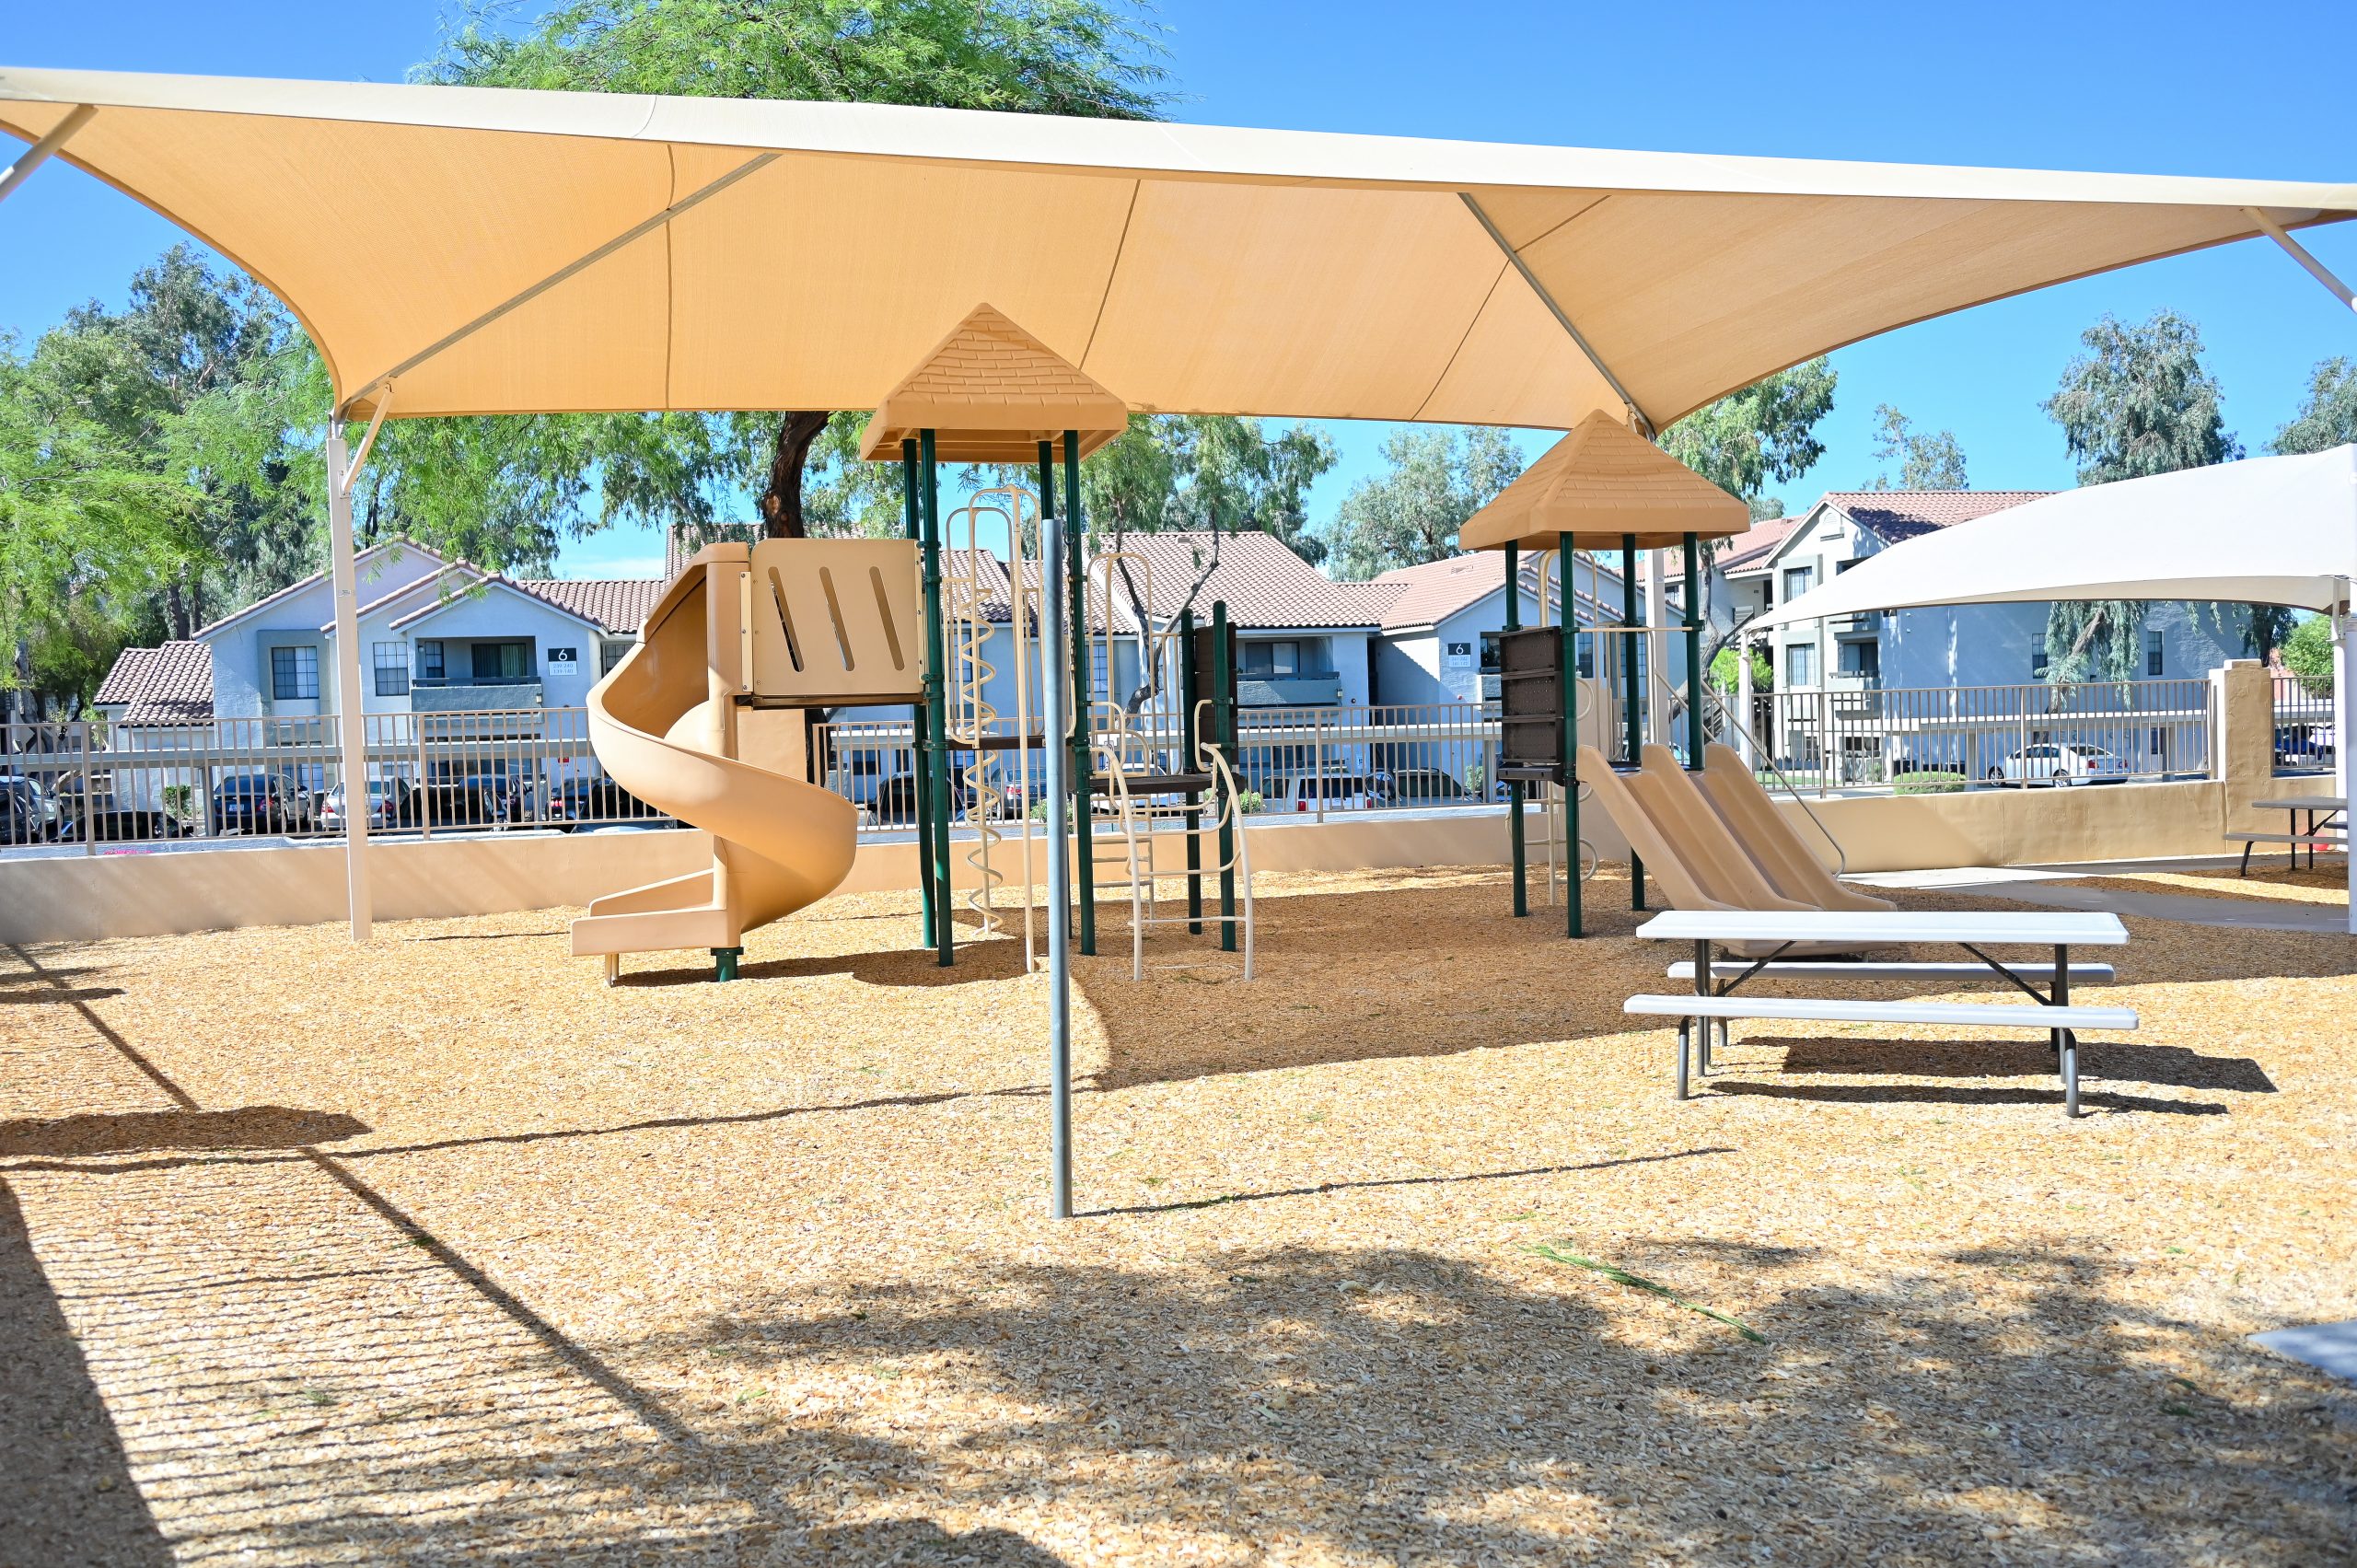 East-Scottsdale-Older-Playground-scaled